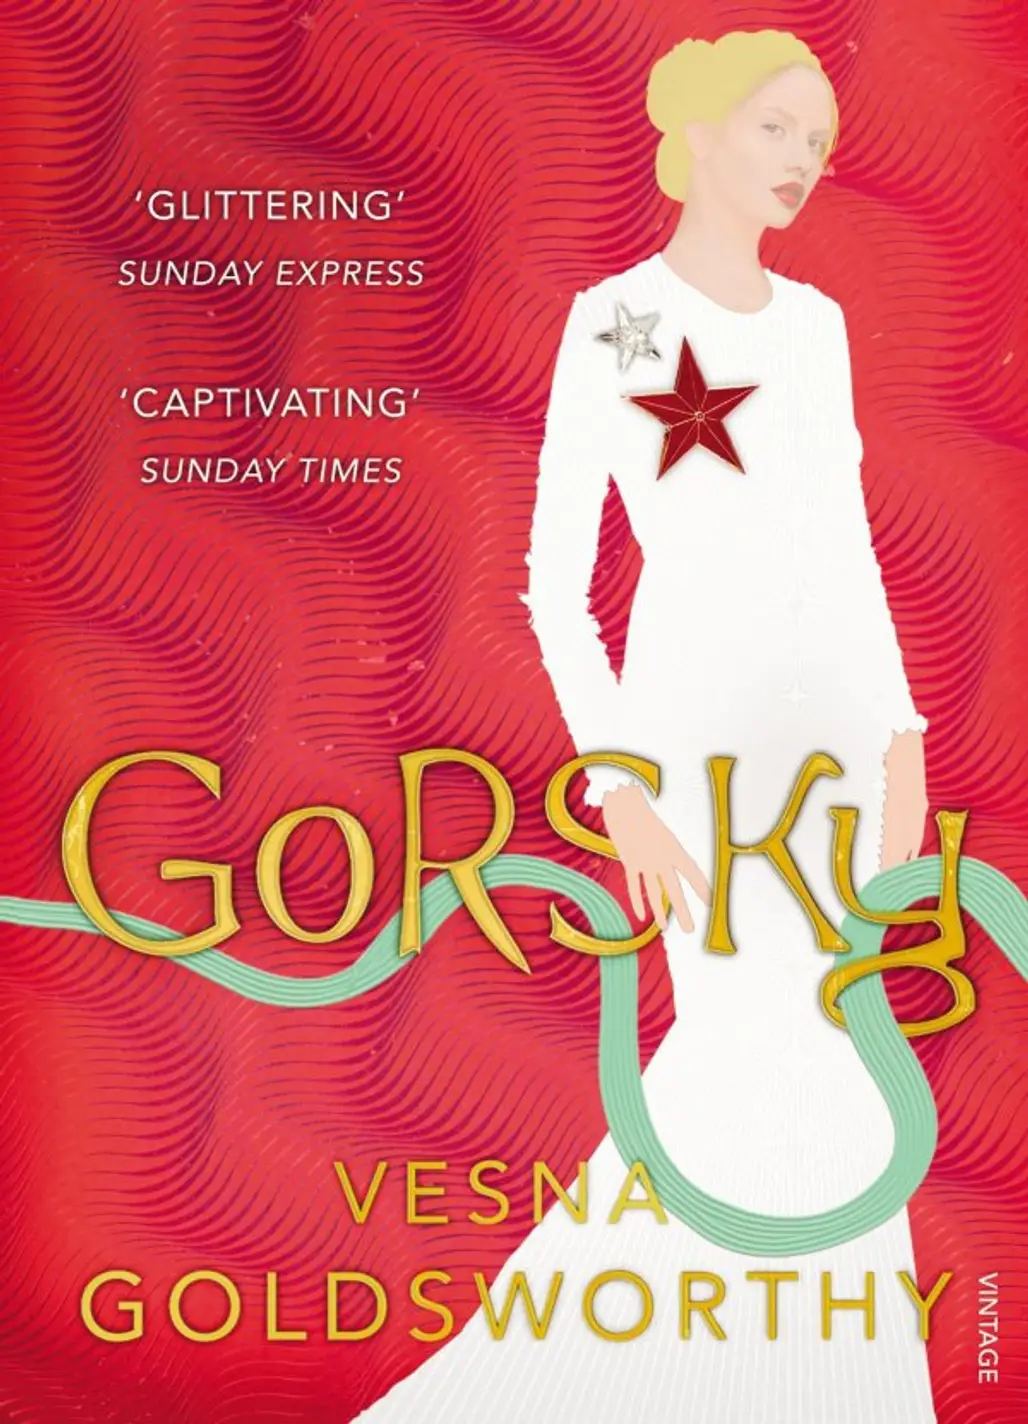 Gorsky by Vesna Goldsworthy